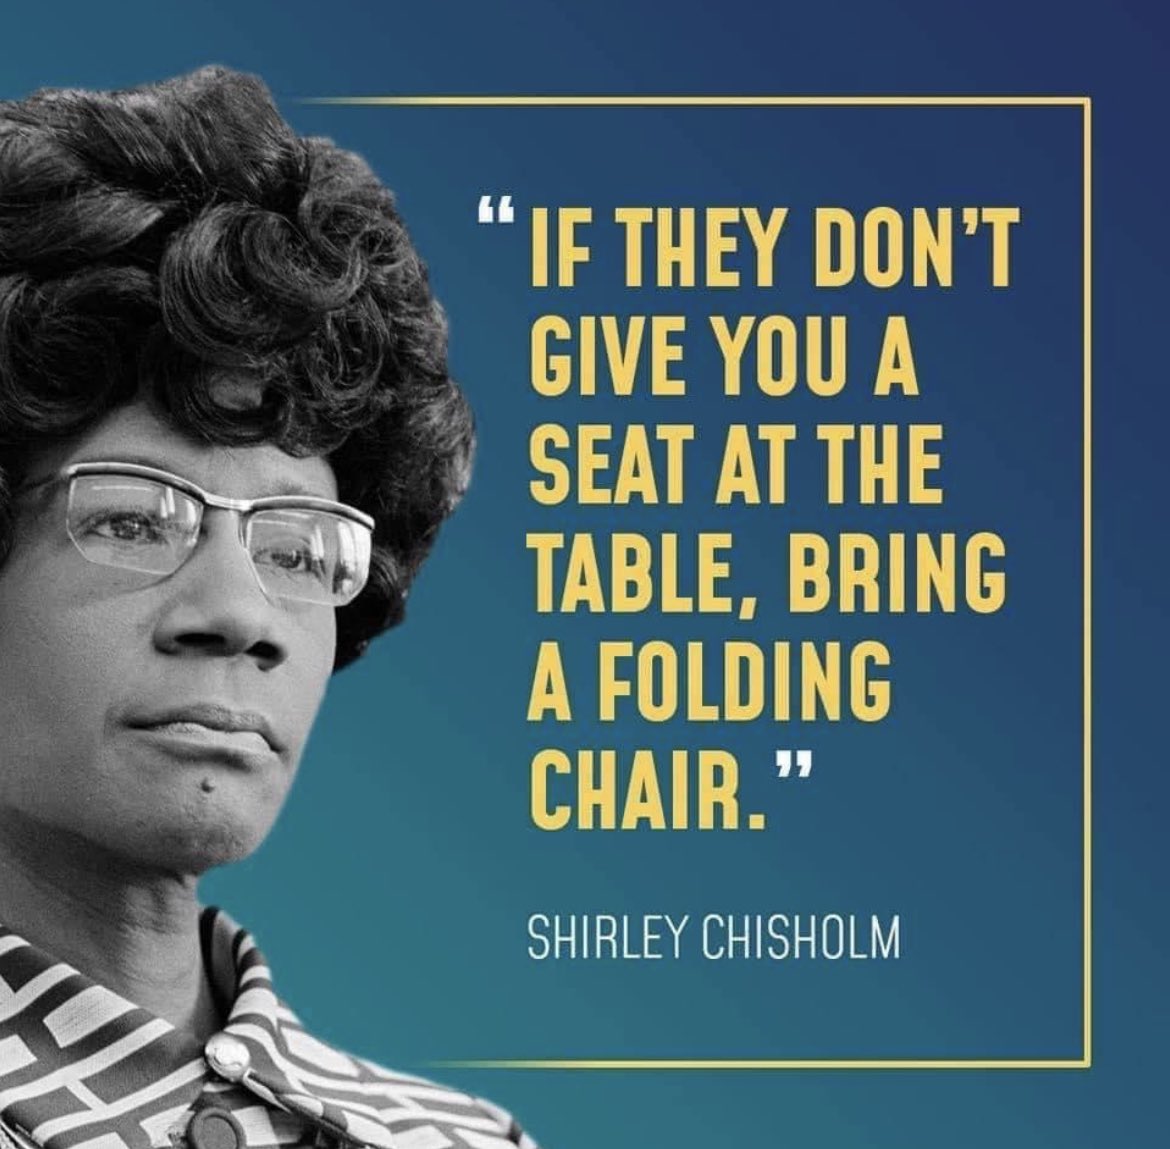 evergreen quote #shirleychisholm #ScoobaGooding #Alabamaboatbrawl #foldingchair 😹